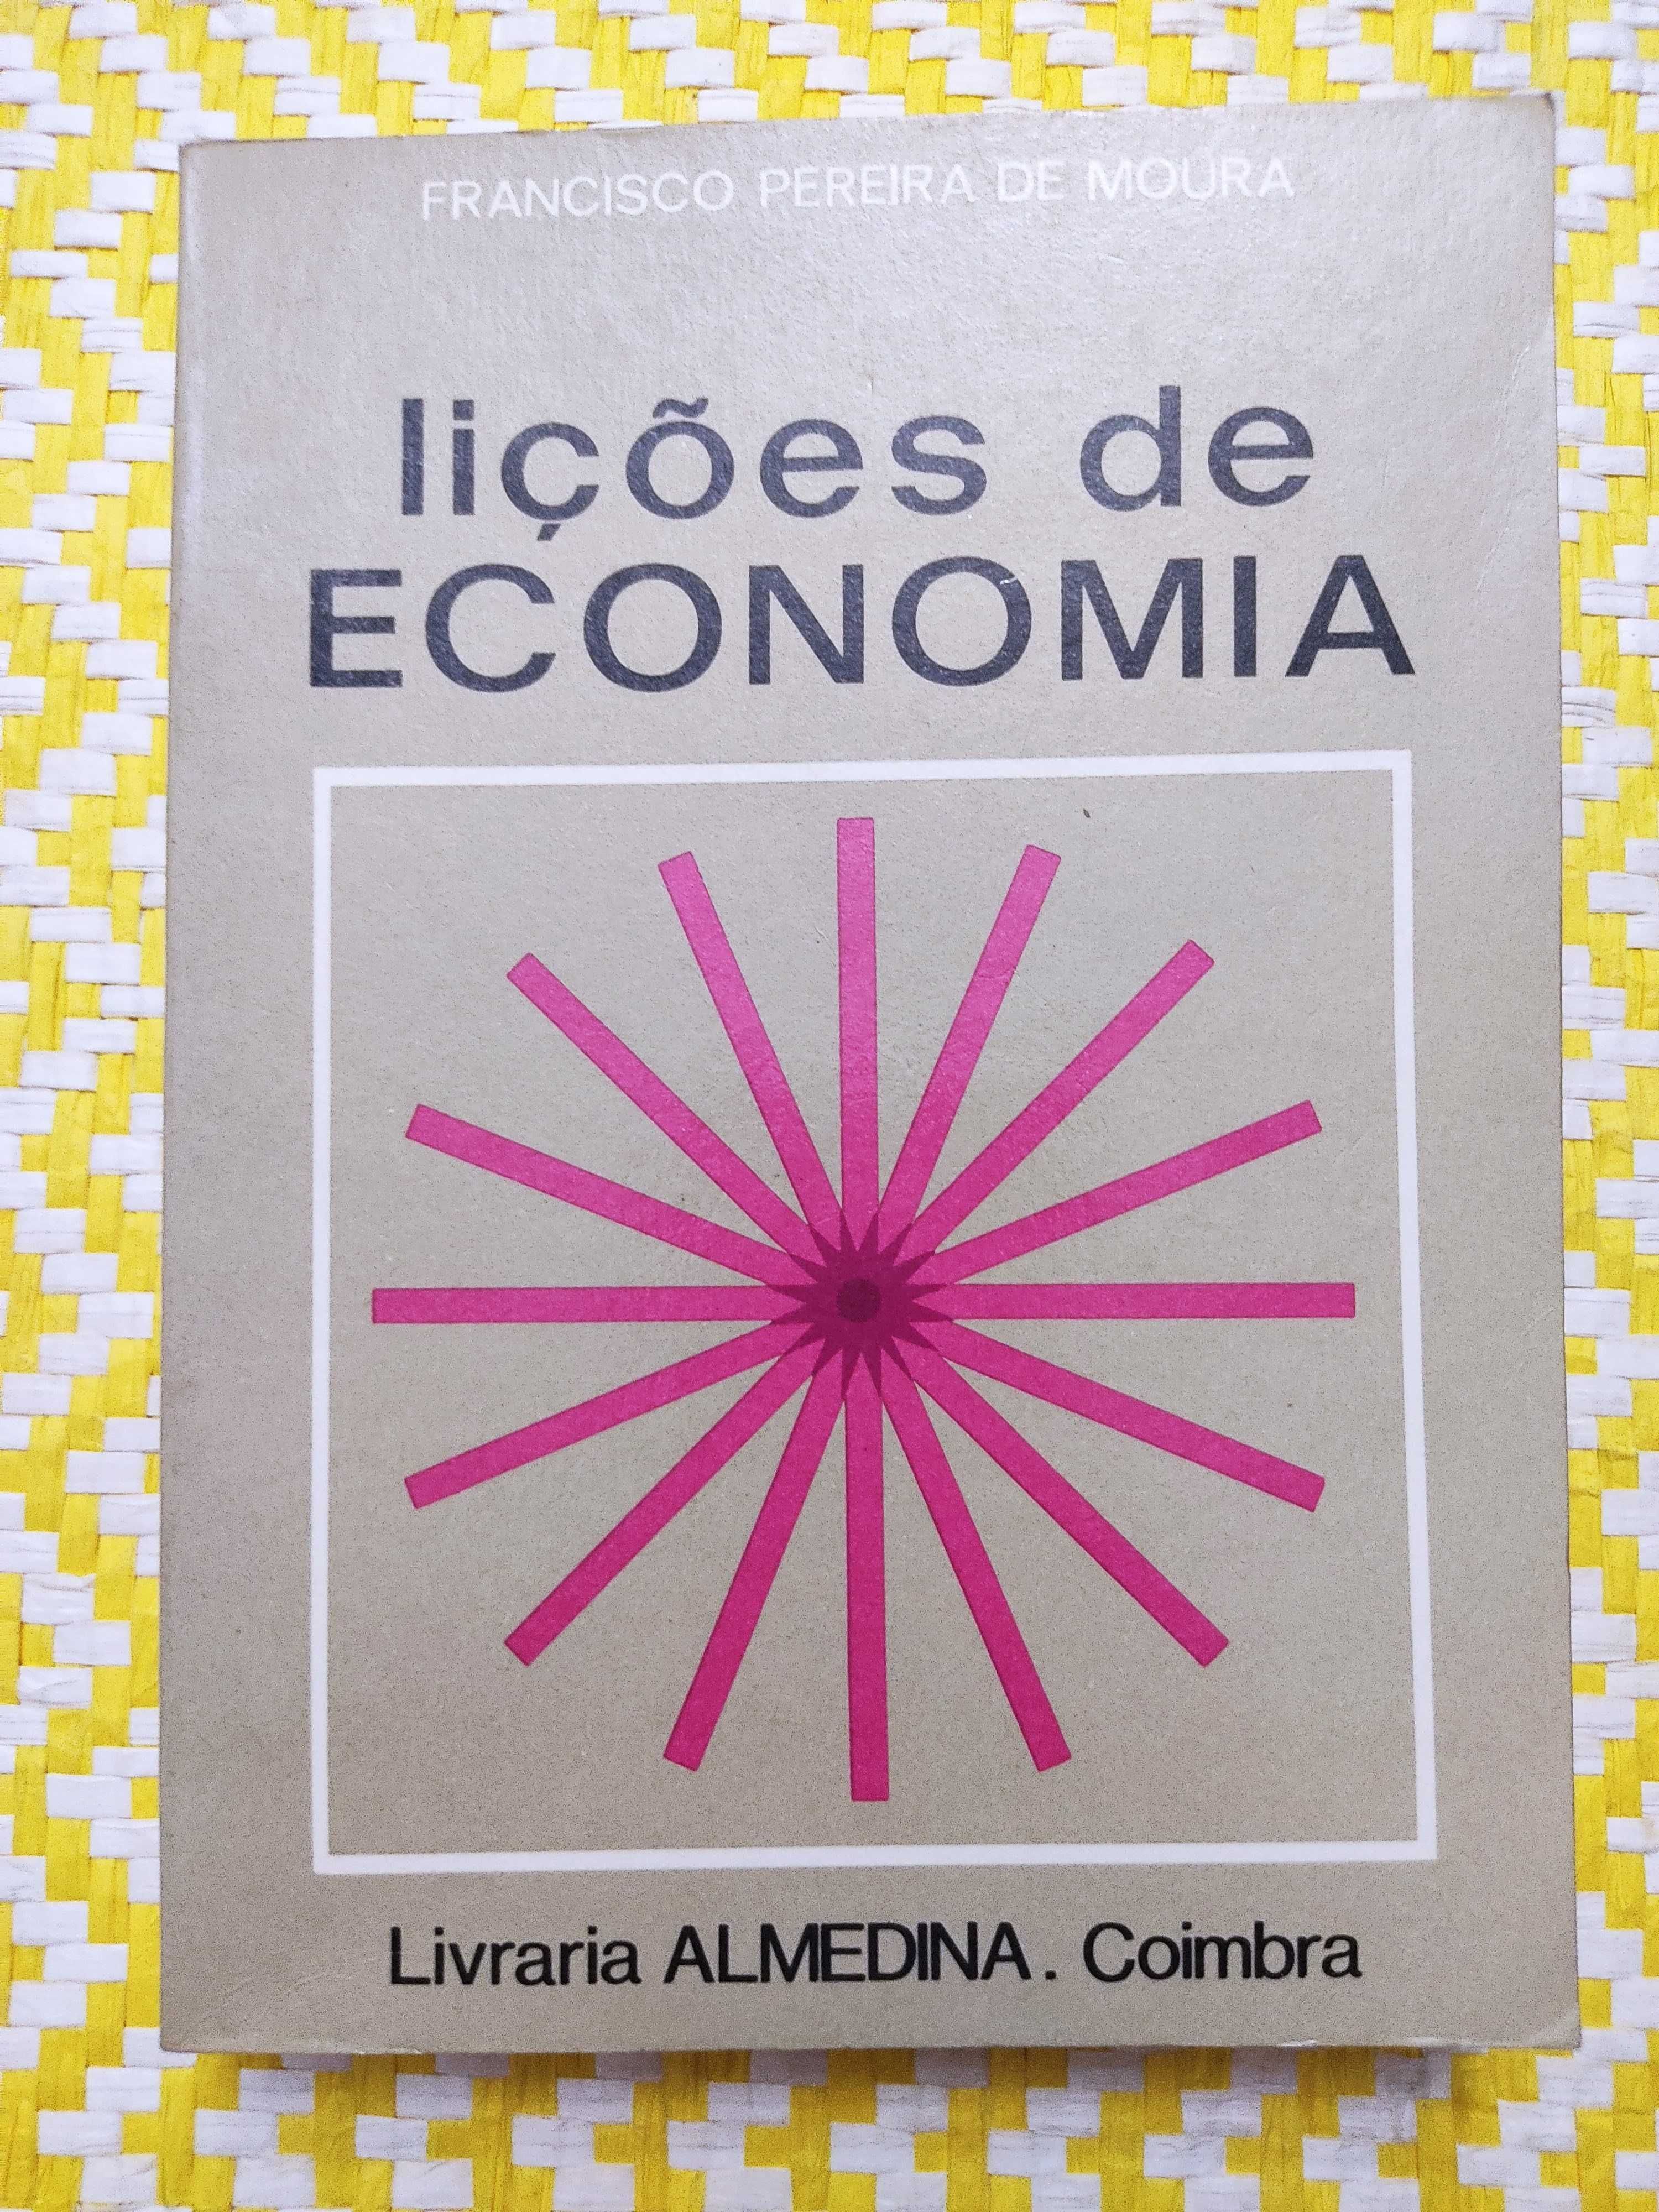 LIÇÕES DE ECONOMIA  
Francisco Pereira de Moura